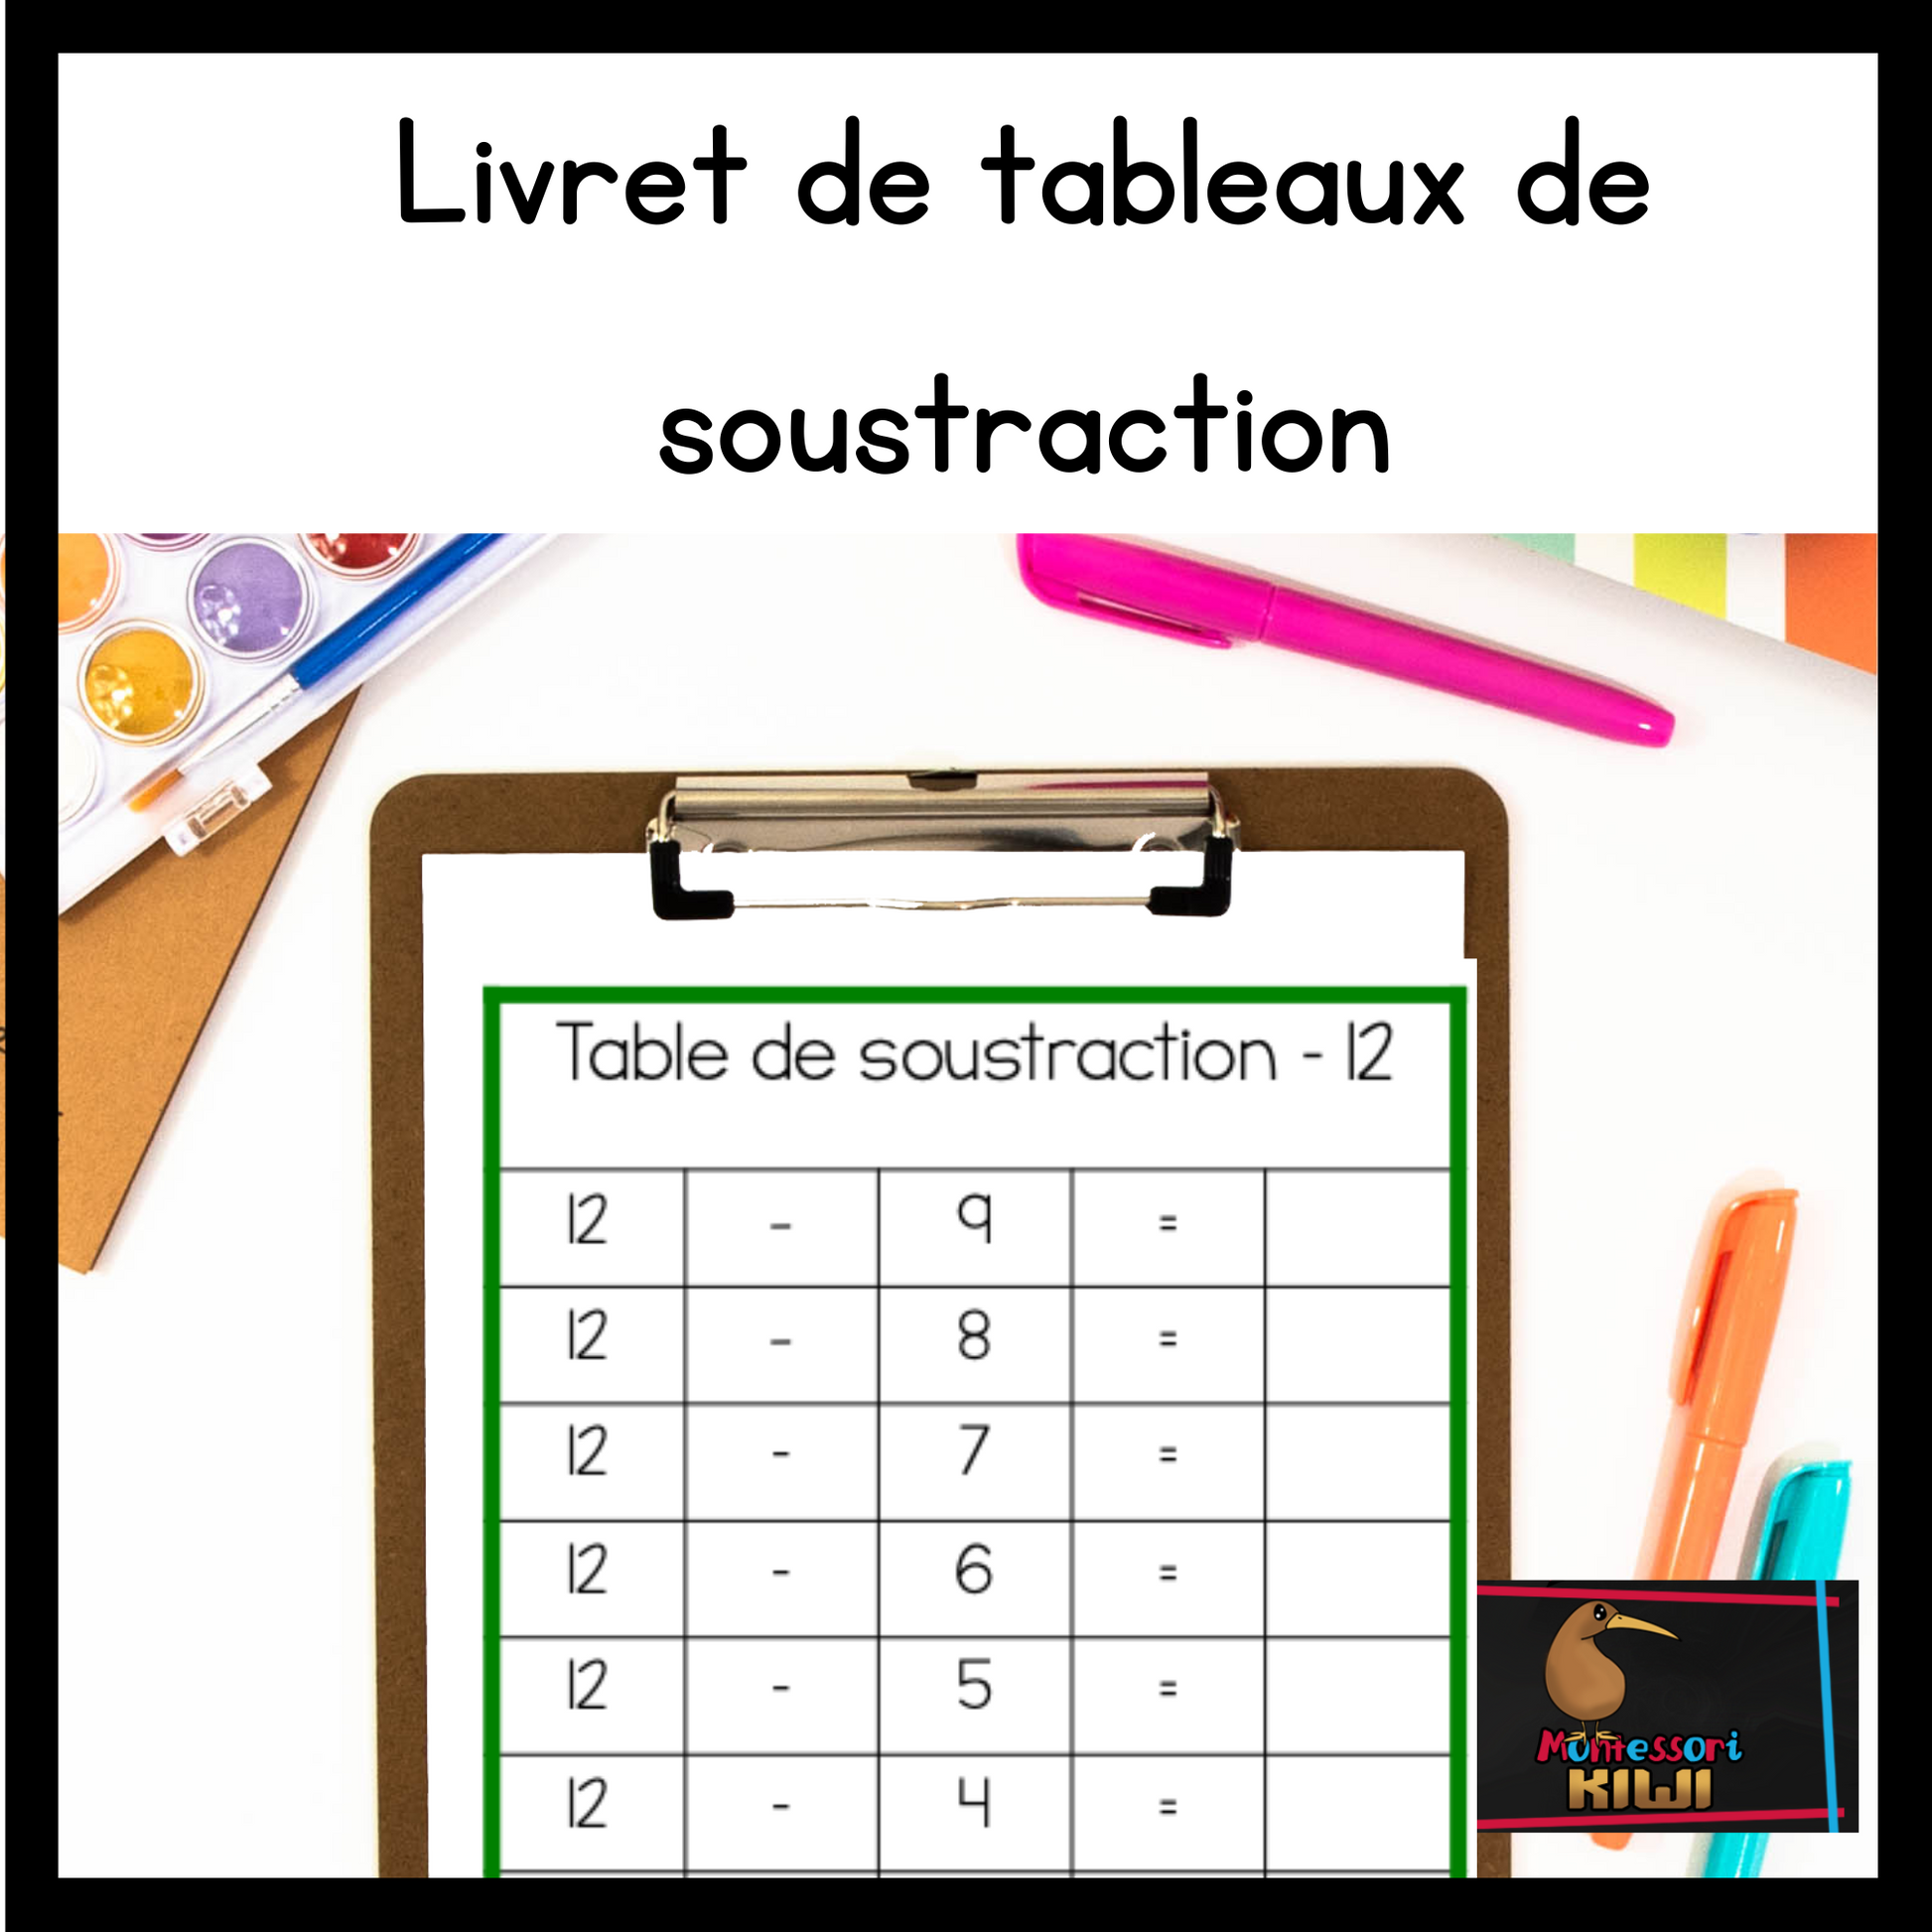 Livret de tableaux de soustraction (subtraction charts French) - montessorikiwi